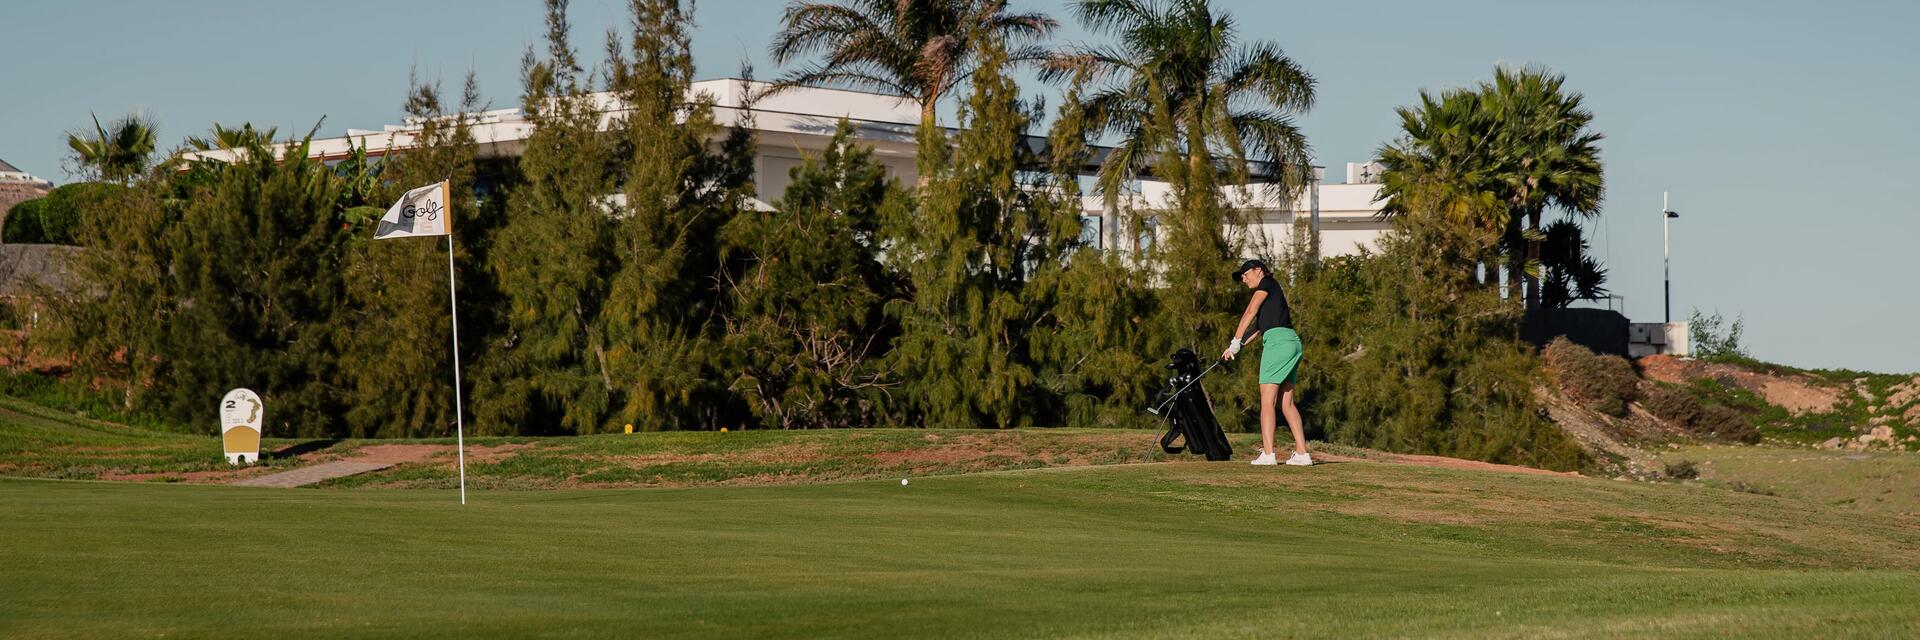 Mujer haciendo birdie en golf